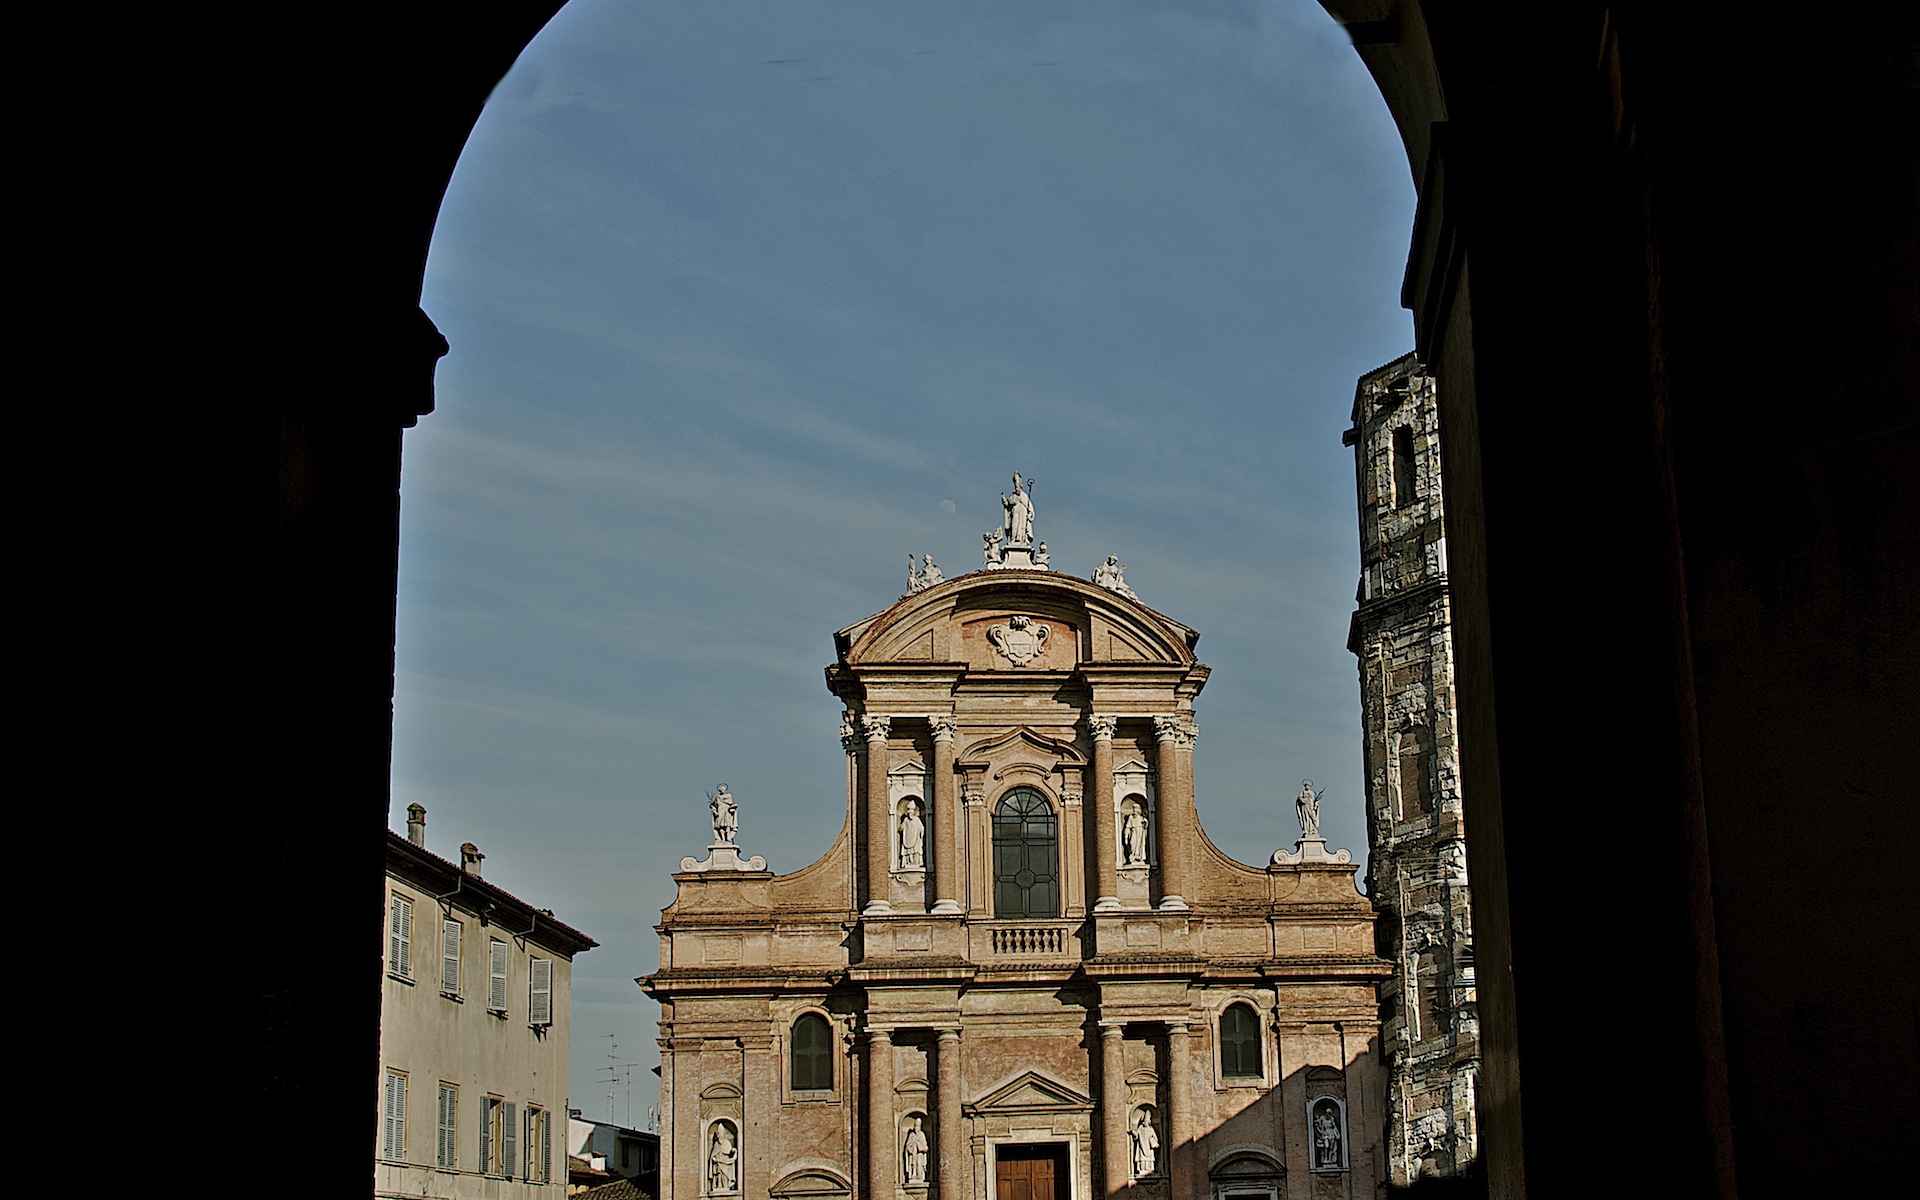 foto: https://upload.wikimedia.org/wikipedia/commons/2/22/Piazza_San_Prospero_con_la_Basilica_del_Patrono_della_citt%C3%A0.jpg